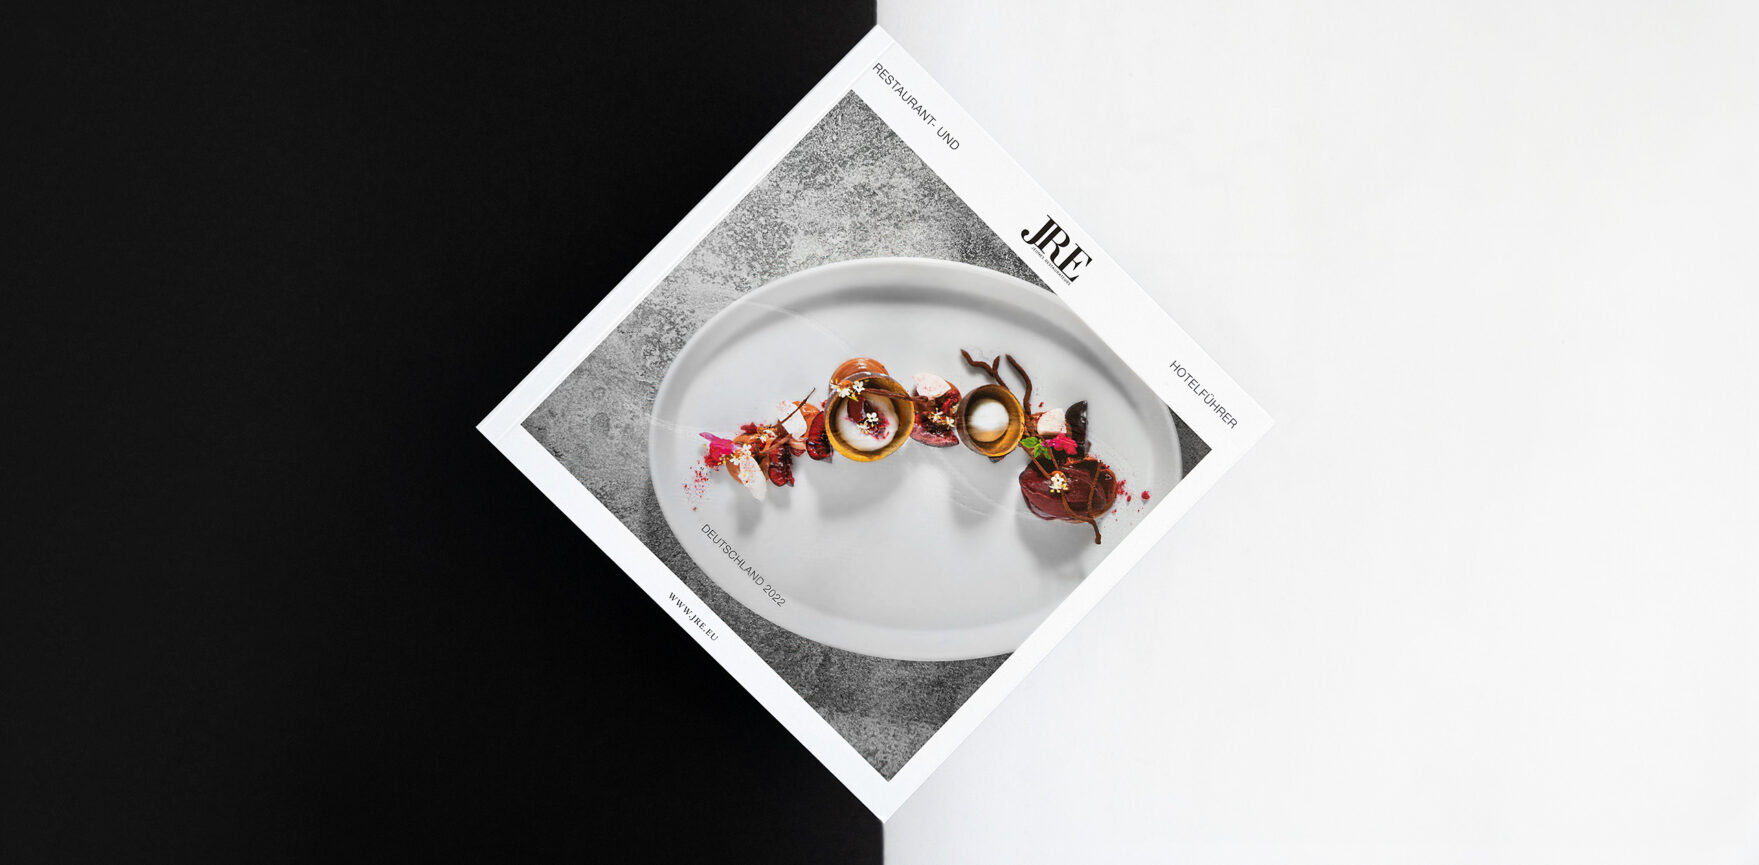 JRE Hotel- und Restaurantführer 2022 als Print-Booklet– Cover